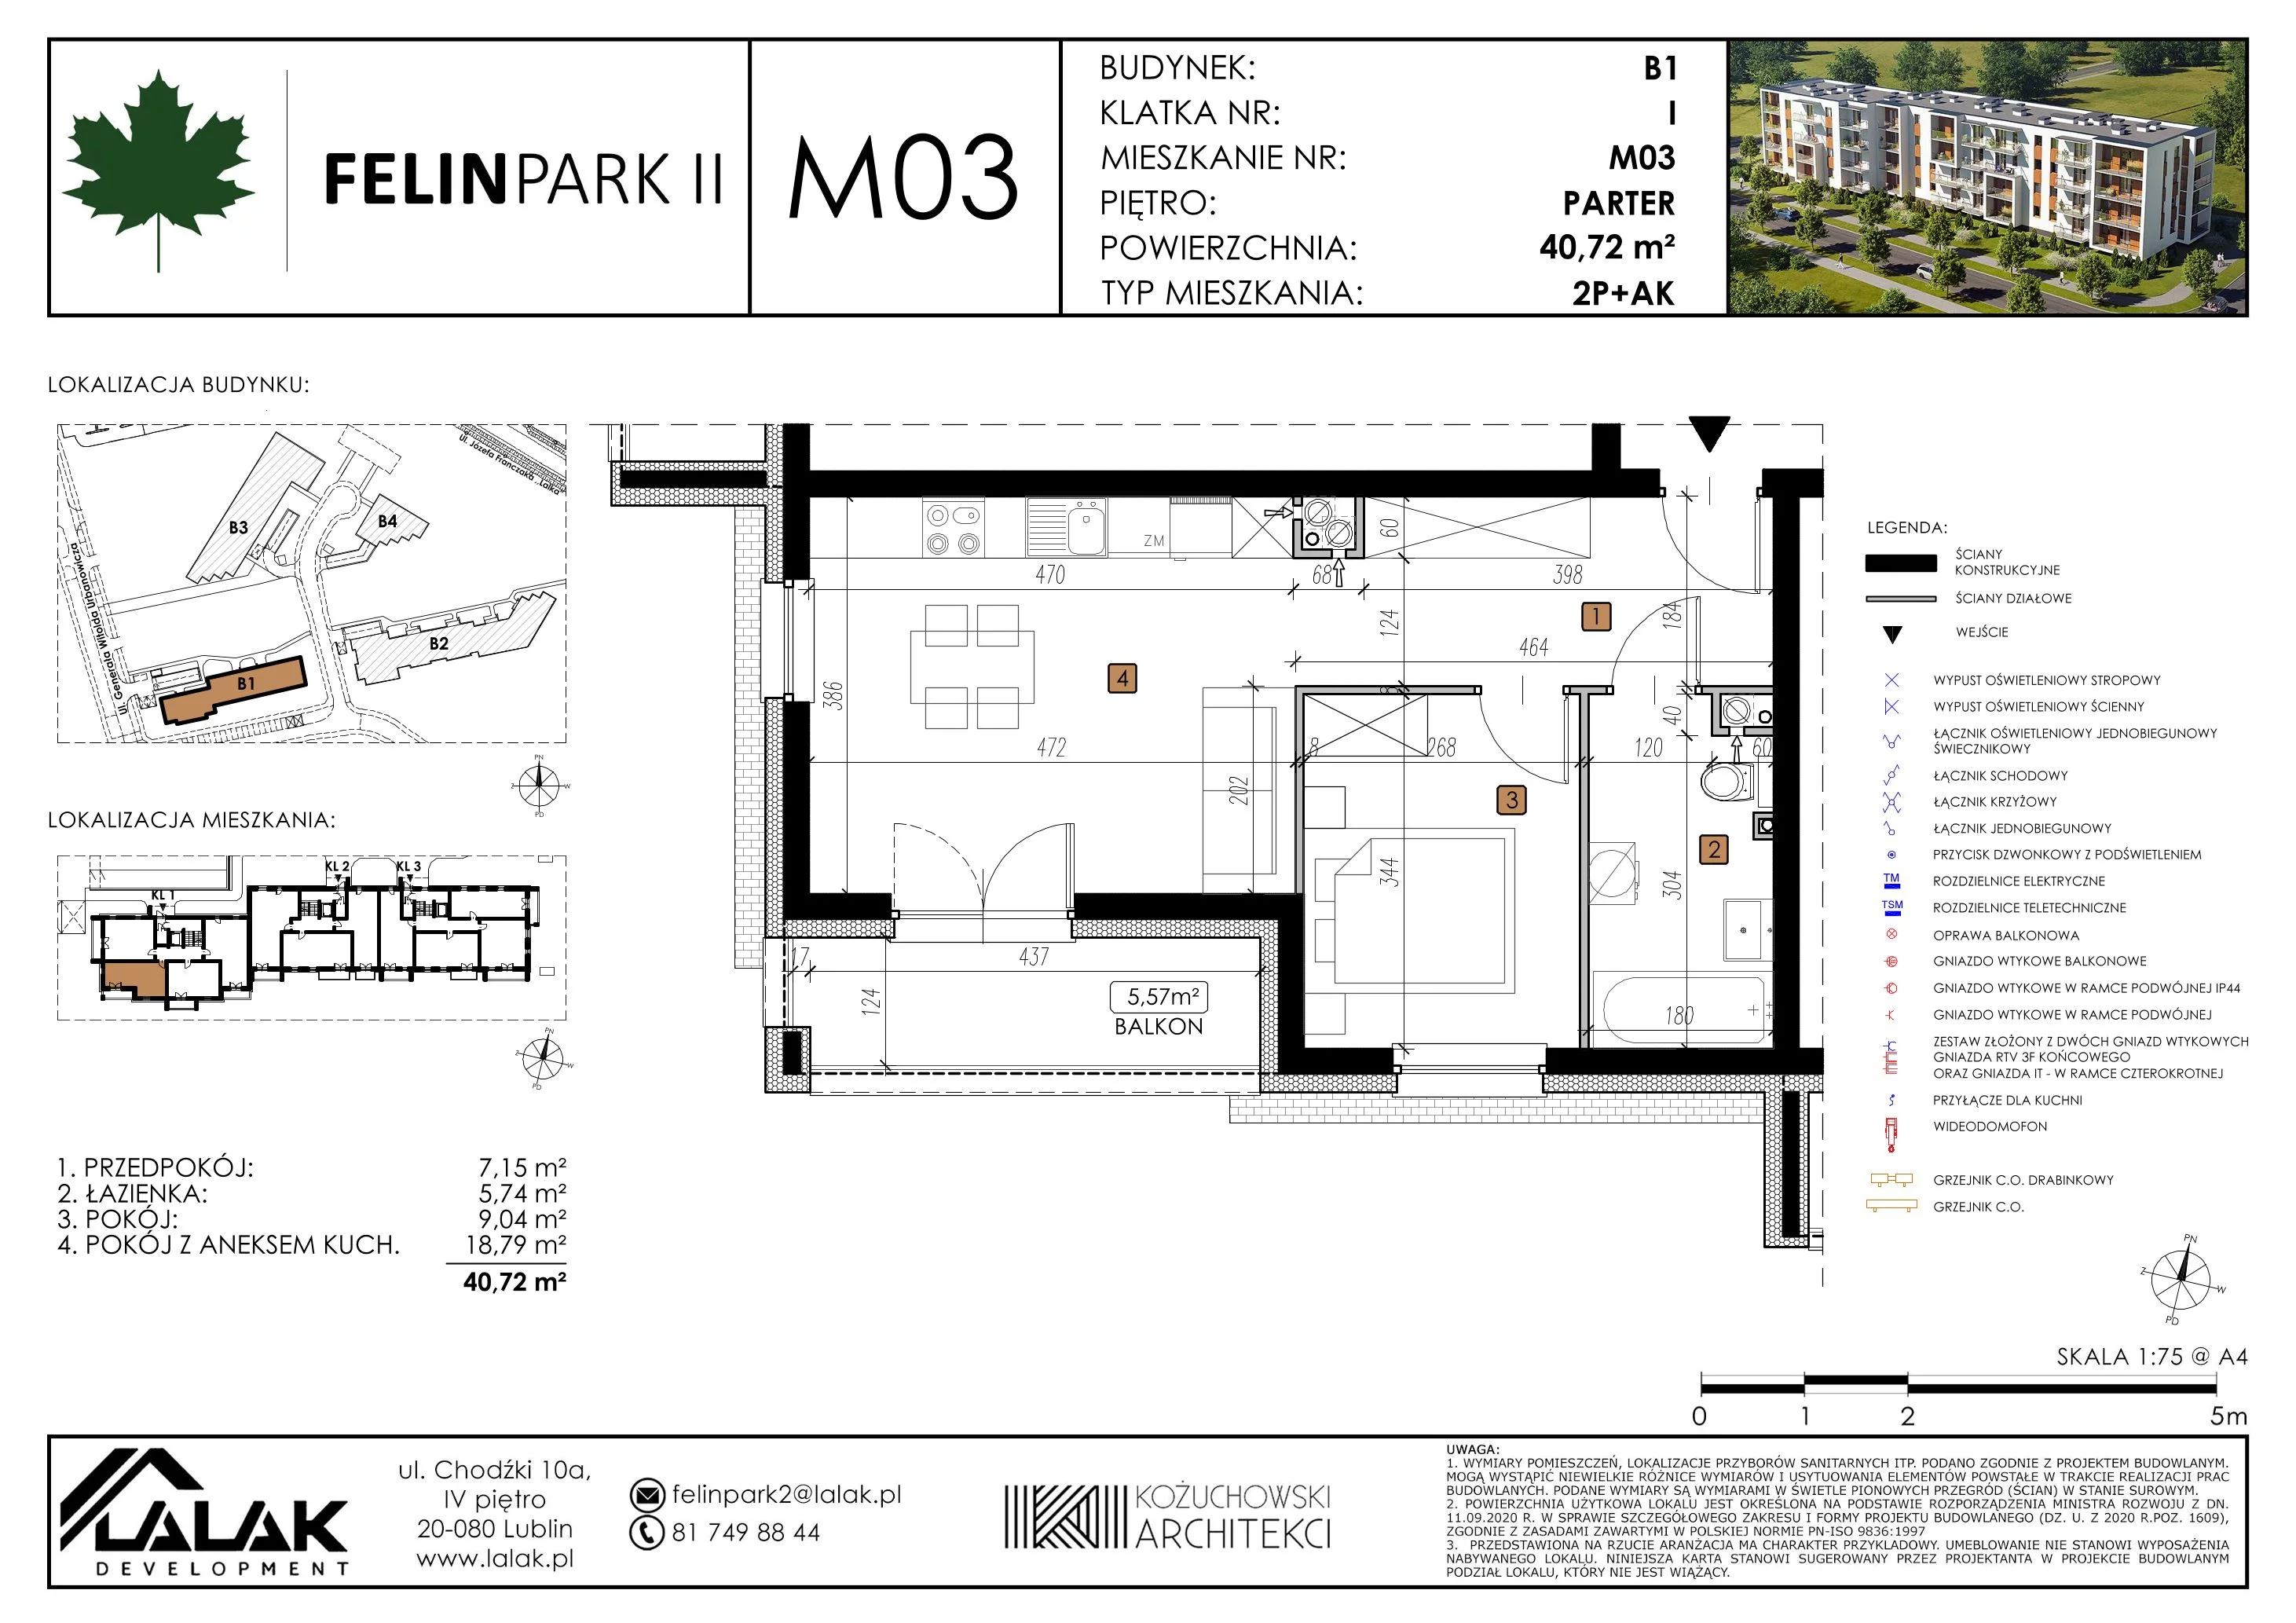 Mieszkanie 40,78 m², parter, oferta nr B1_M3/P, Felin Park II, Lublin, Felin, ul. gen. Stanisława Skalskiego 8-10